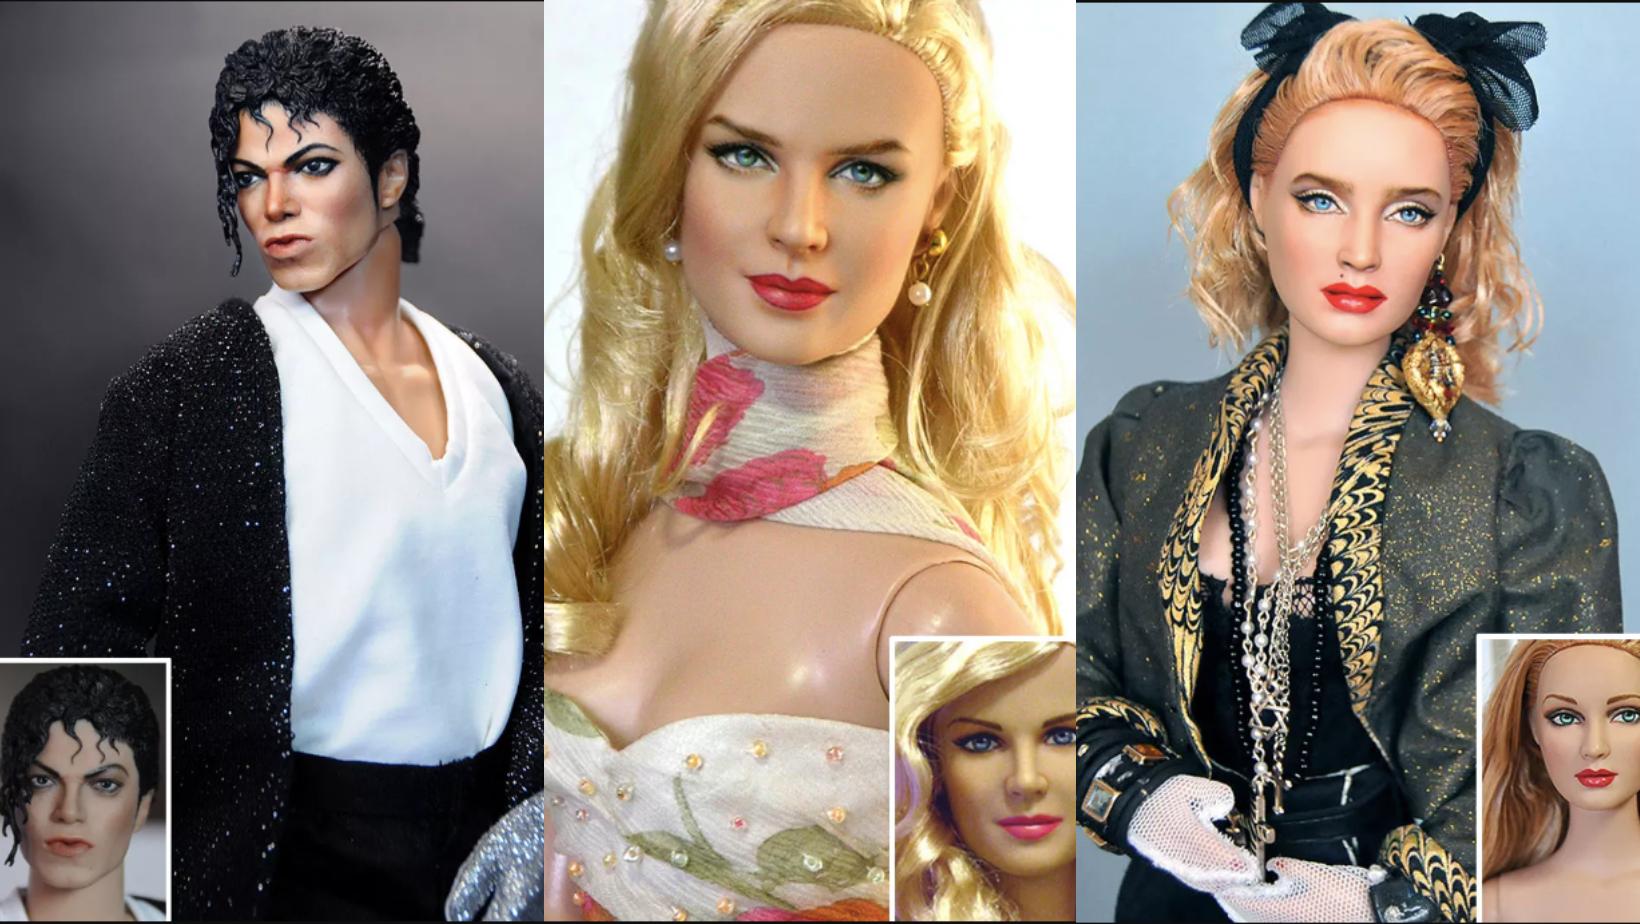 Художник перекрашивает куклы знаменитостей, чтобы они выглядели более реалистично (18 Новых Фото)